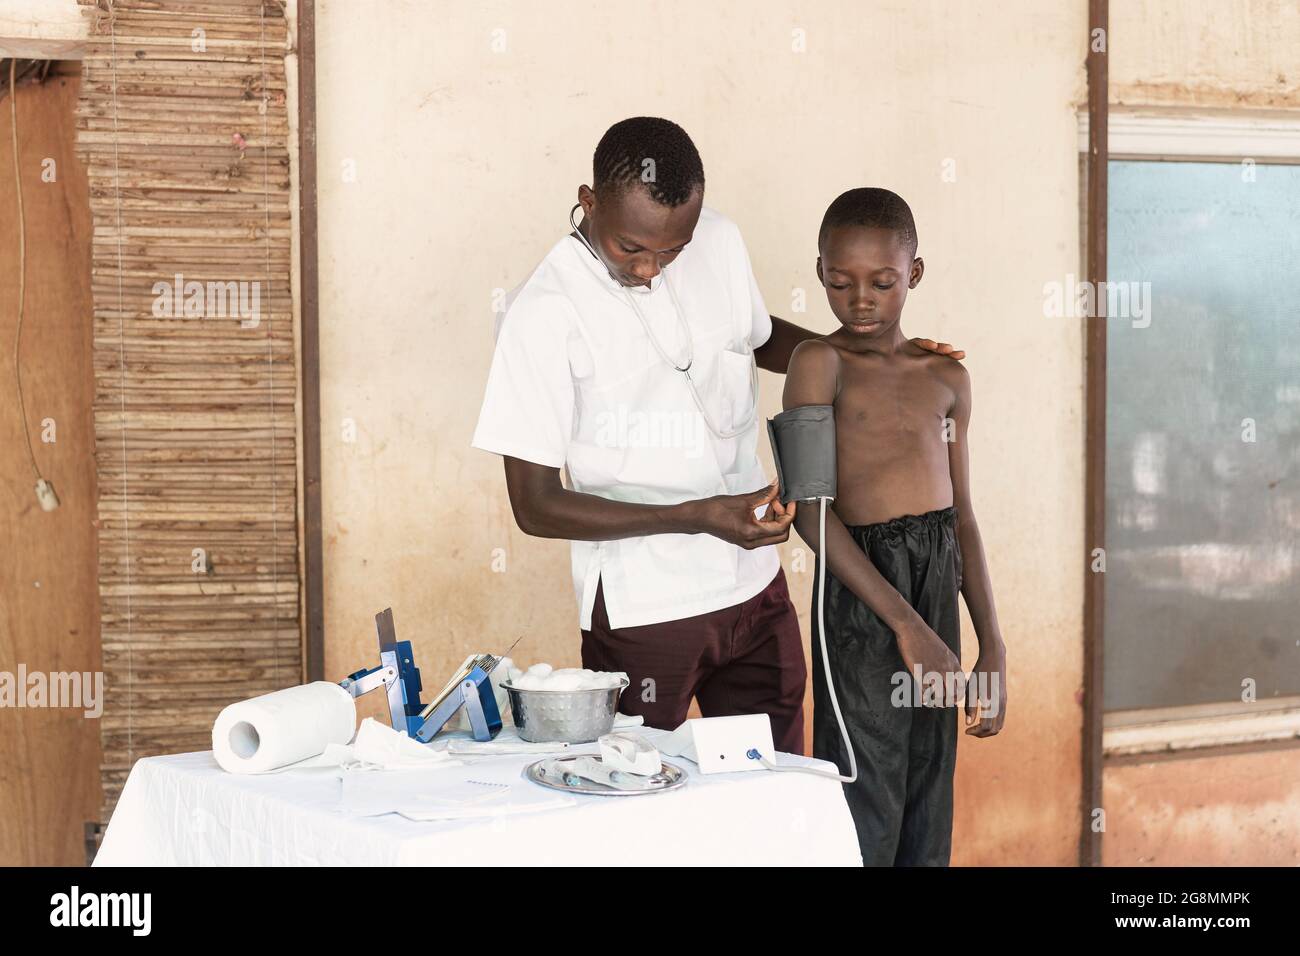 In questa immagine, un giovane operatore sanitario prende i valori della pressione sanguigna da un piccolo ragazzo nero durante il check-up di routine in un ambiente ospedaliero rurale in AF Foto Stock